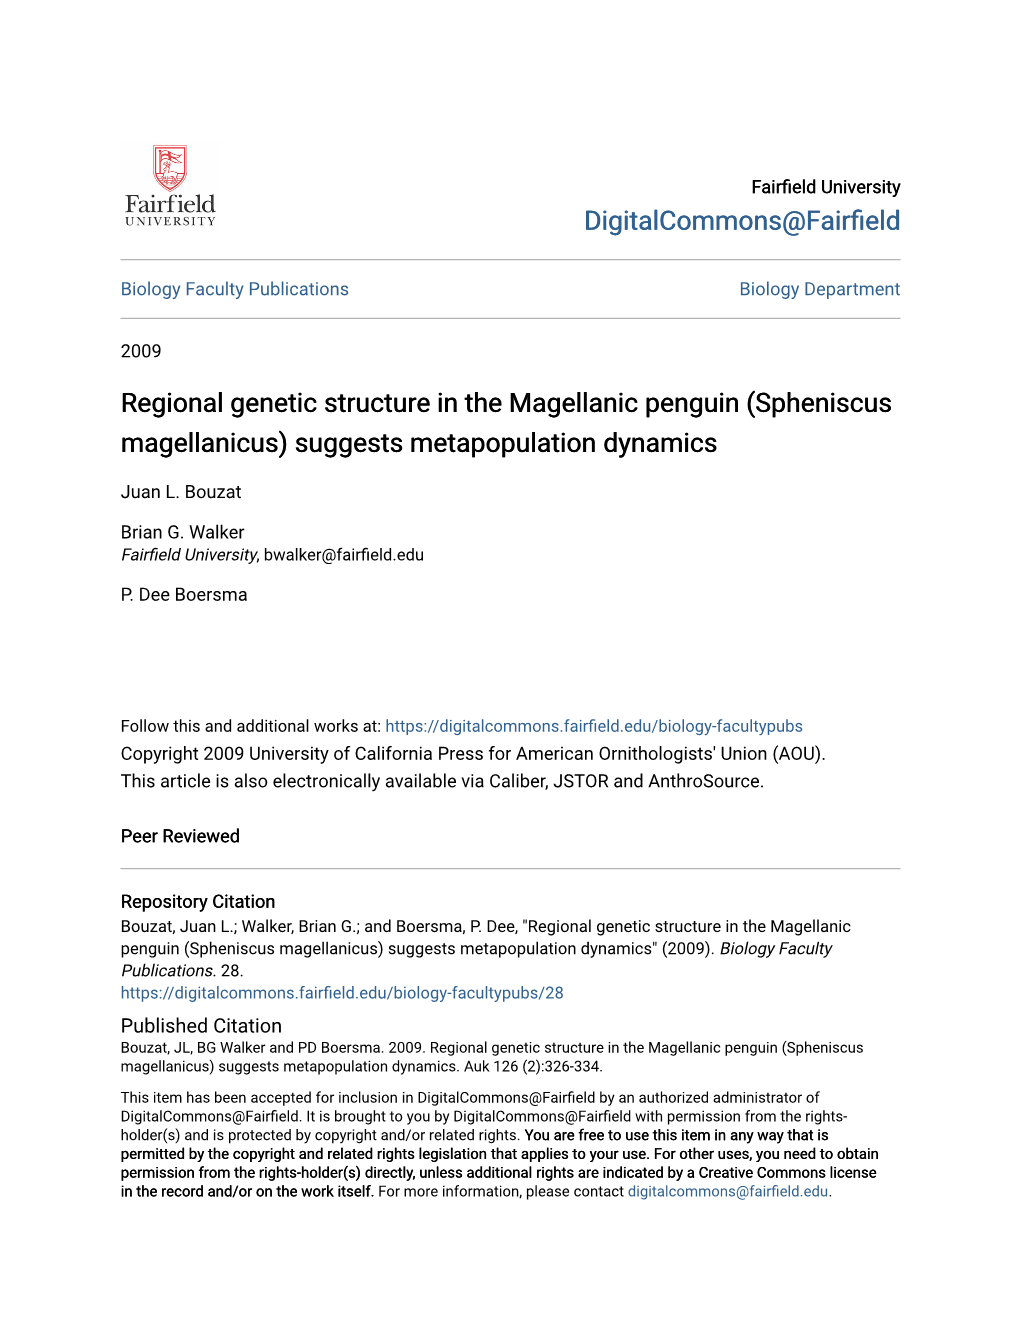 Regional Genetic Structure in the Magellanic Penguin (Spheniscus Magellanicus) Suggests Metapopulation Dynamics